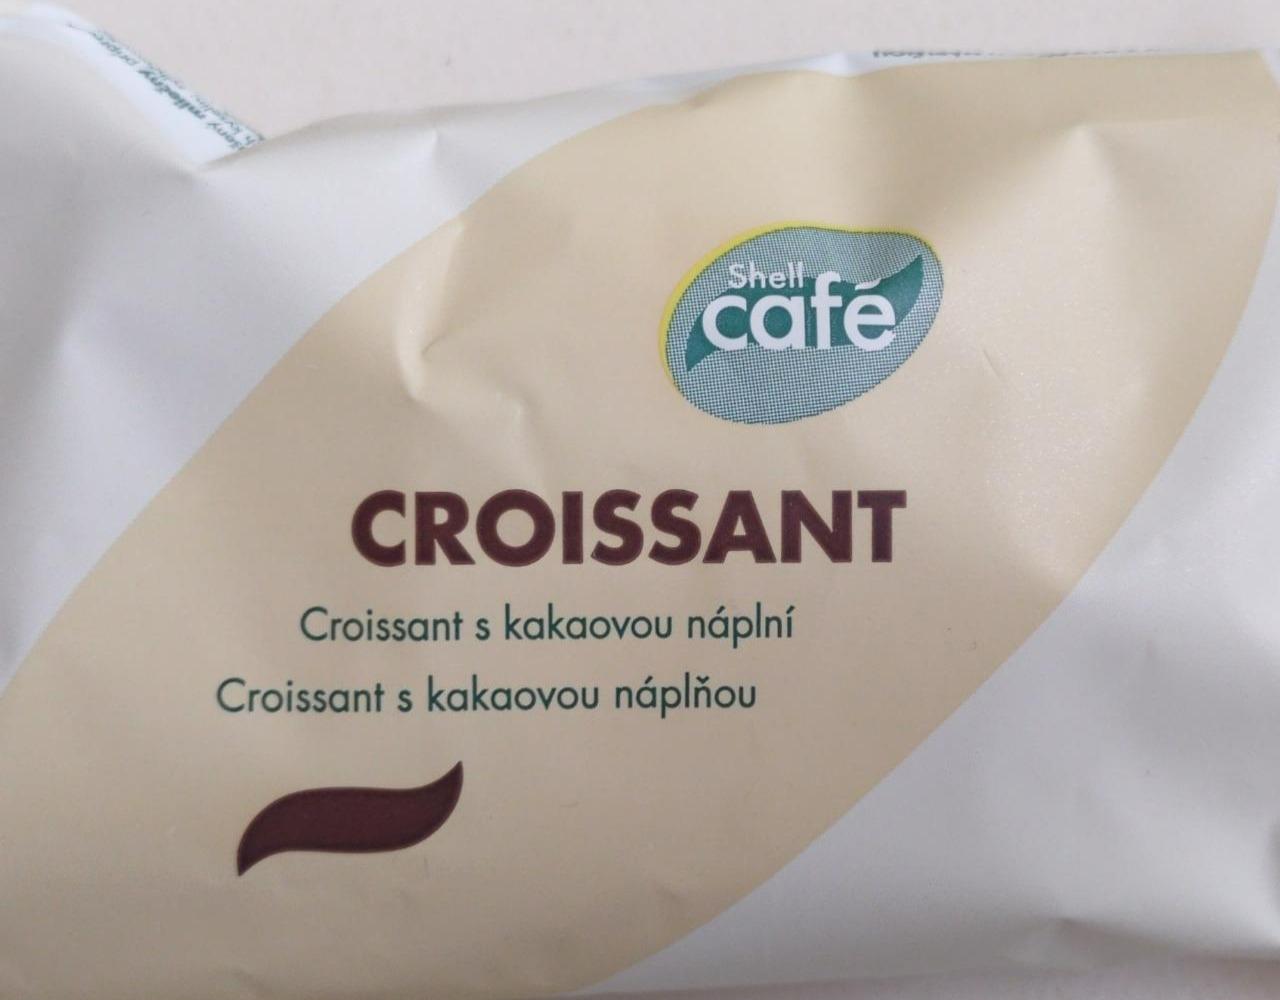 Fotografie - Croissant s kakaovou náplní Shell Café